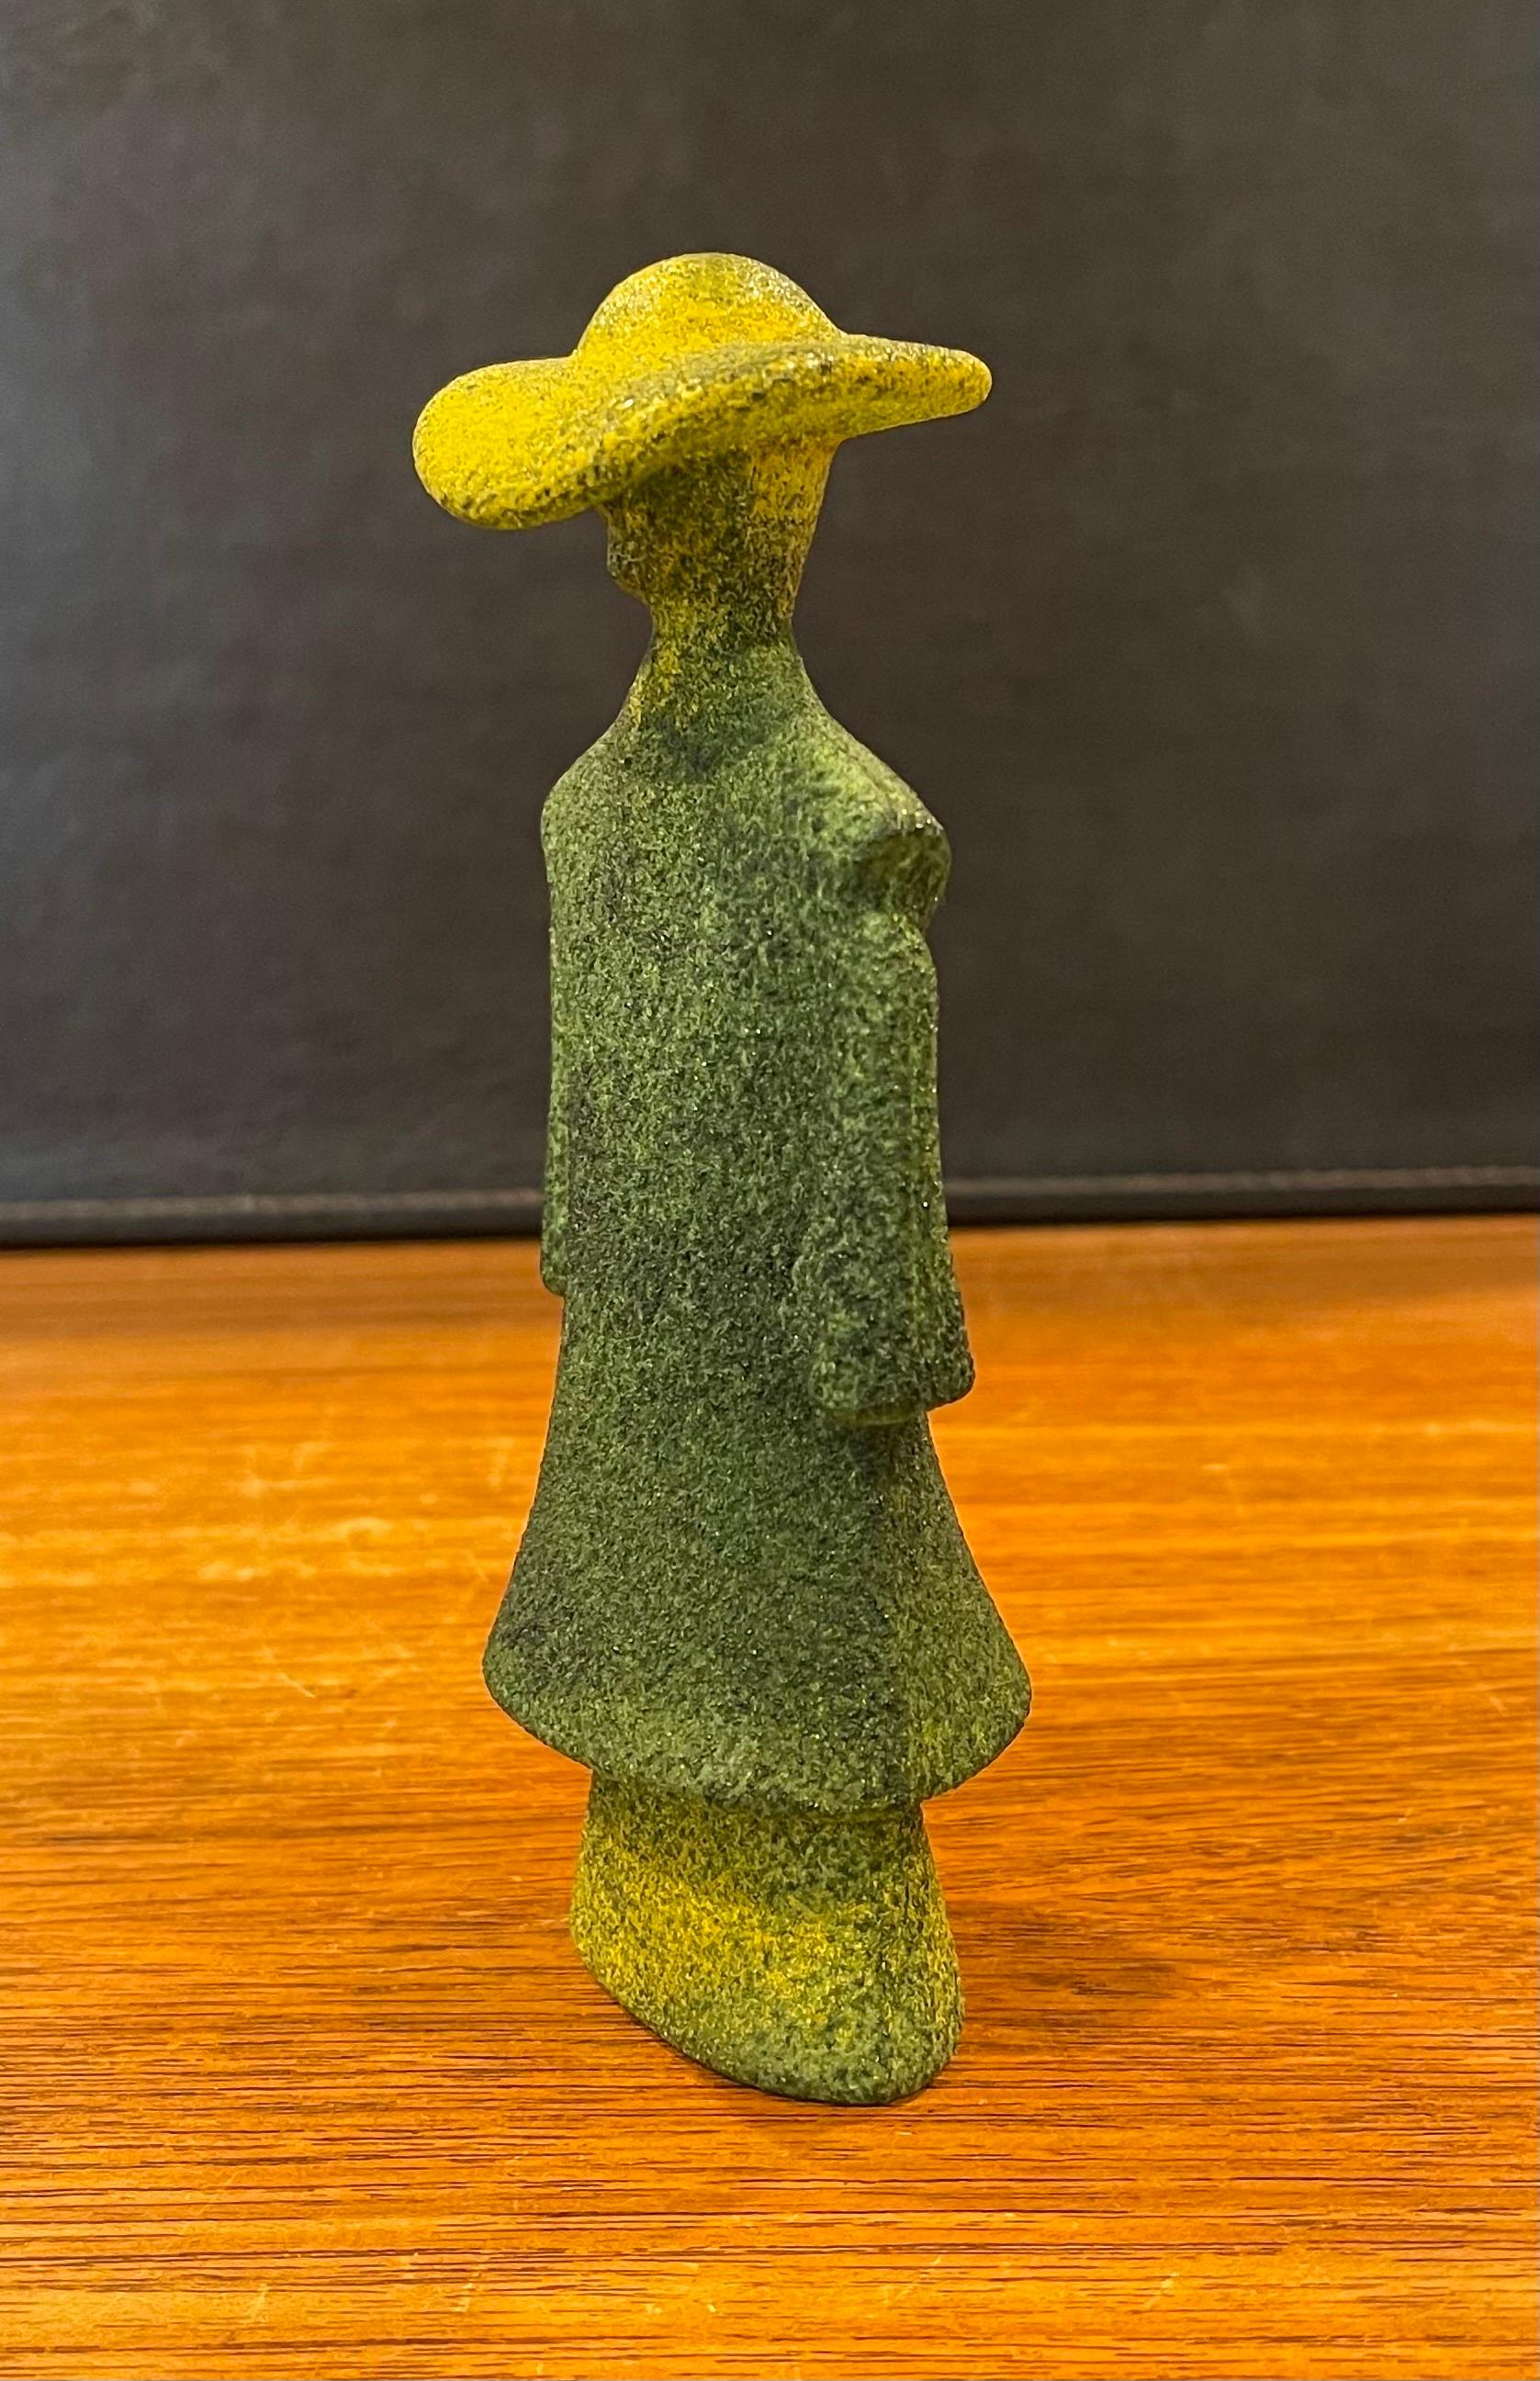 Poncho Green Art Glass Catwalk Sculpture by Kjell Engman for Kosta Boda Sweden For Sale 3